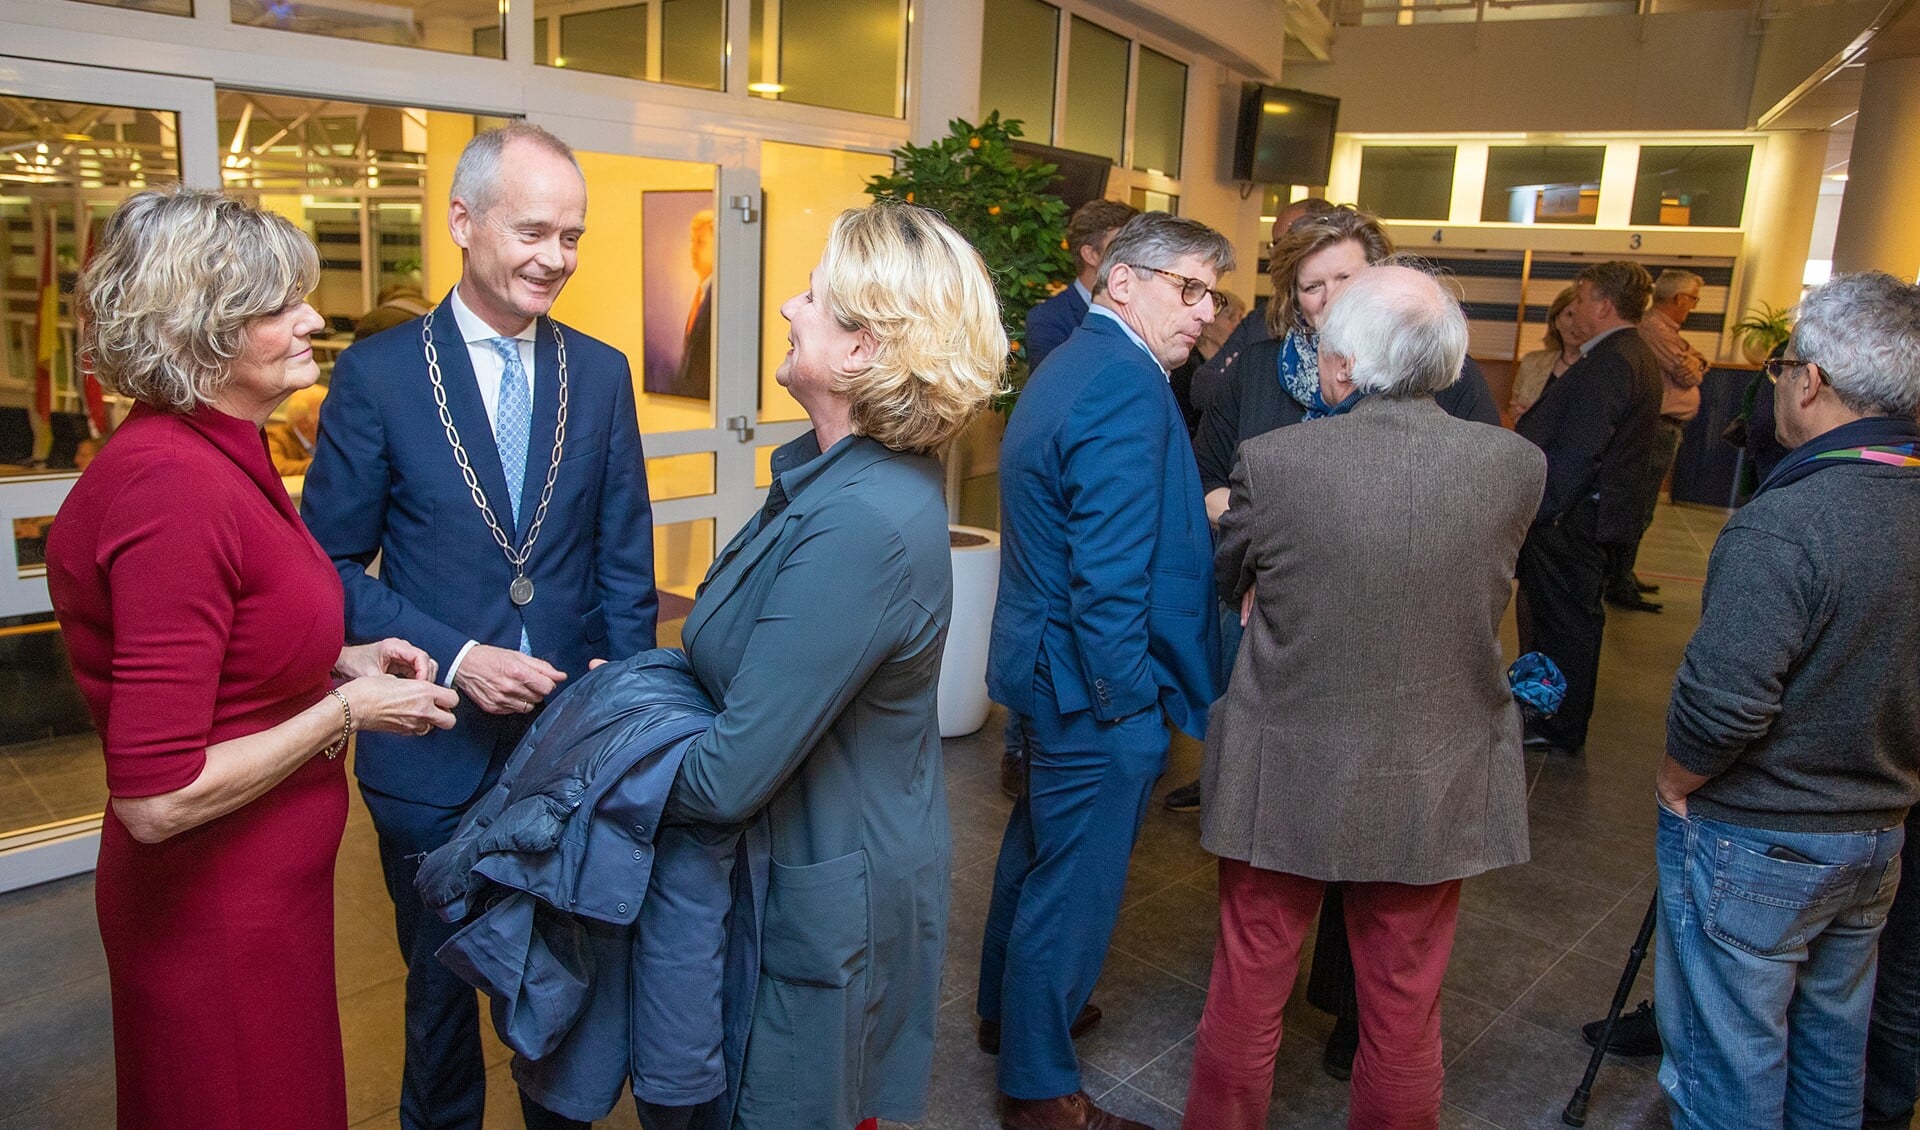 Burgemeester Niek Meijer en zijn vrouw Janny in gesprek met een van de bezoekers.